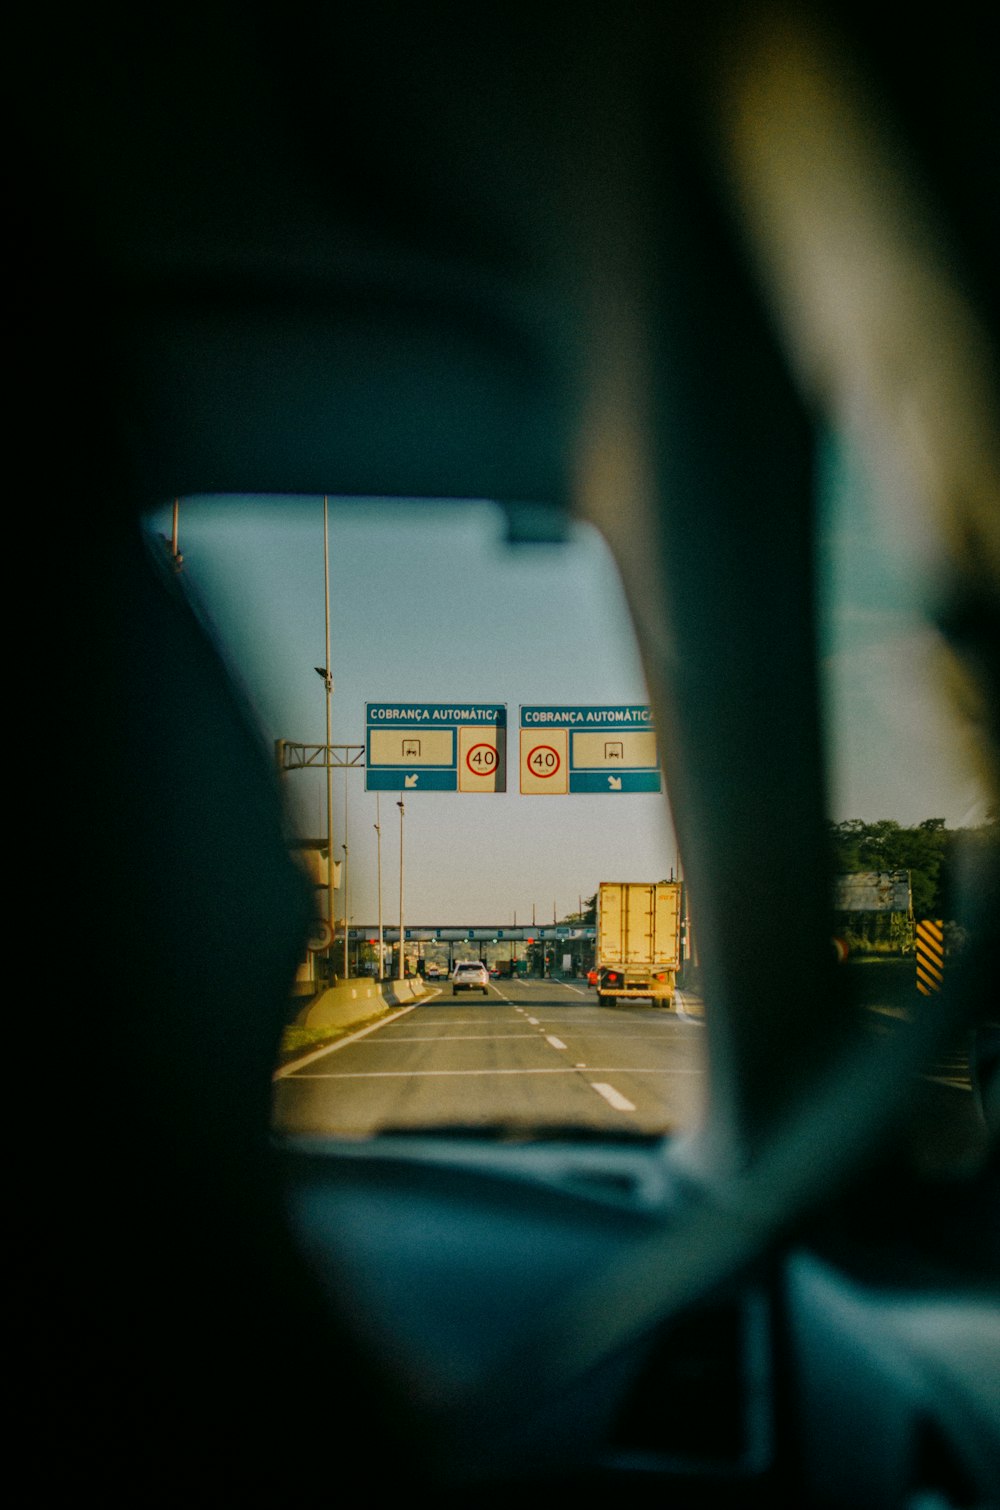 a view of a street through a car window